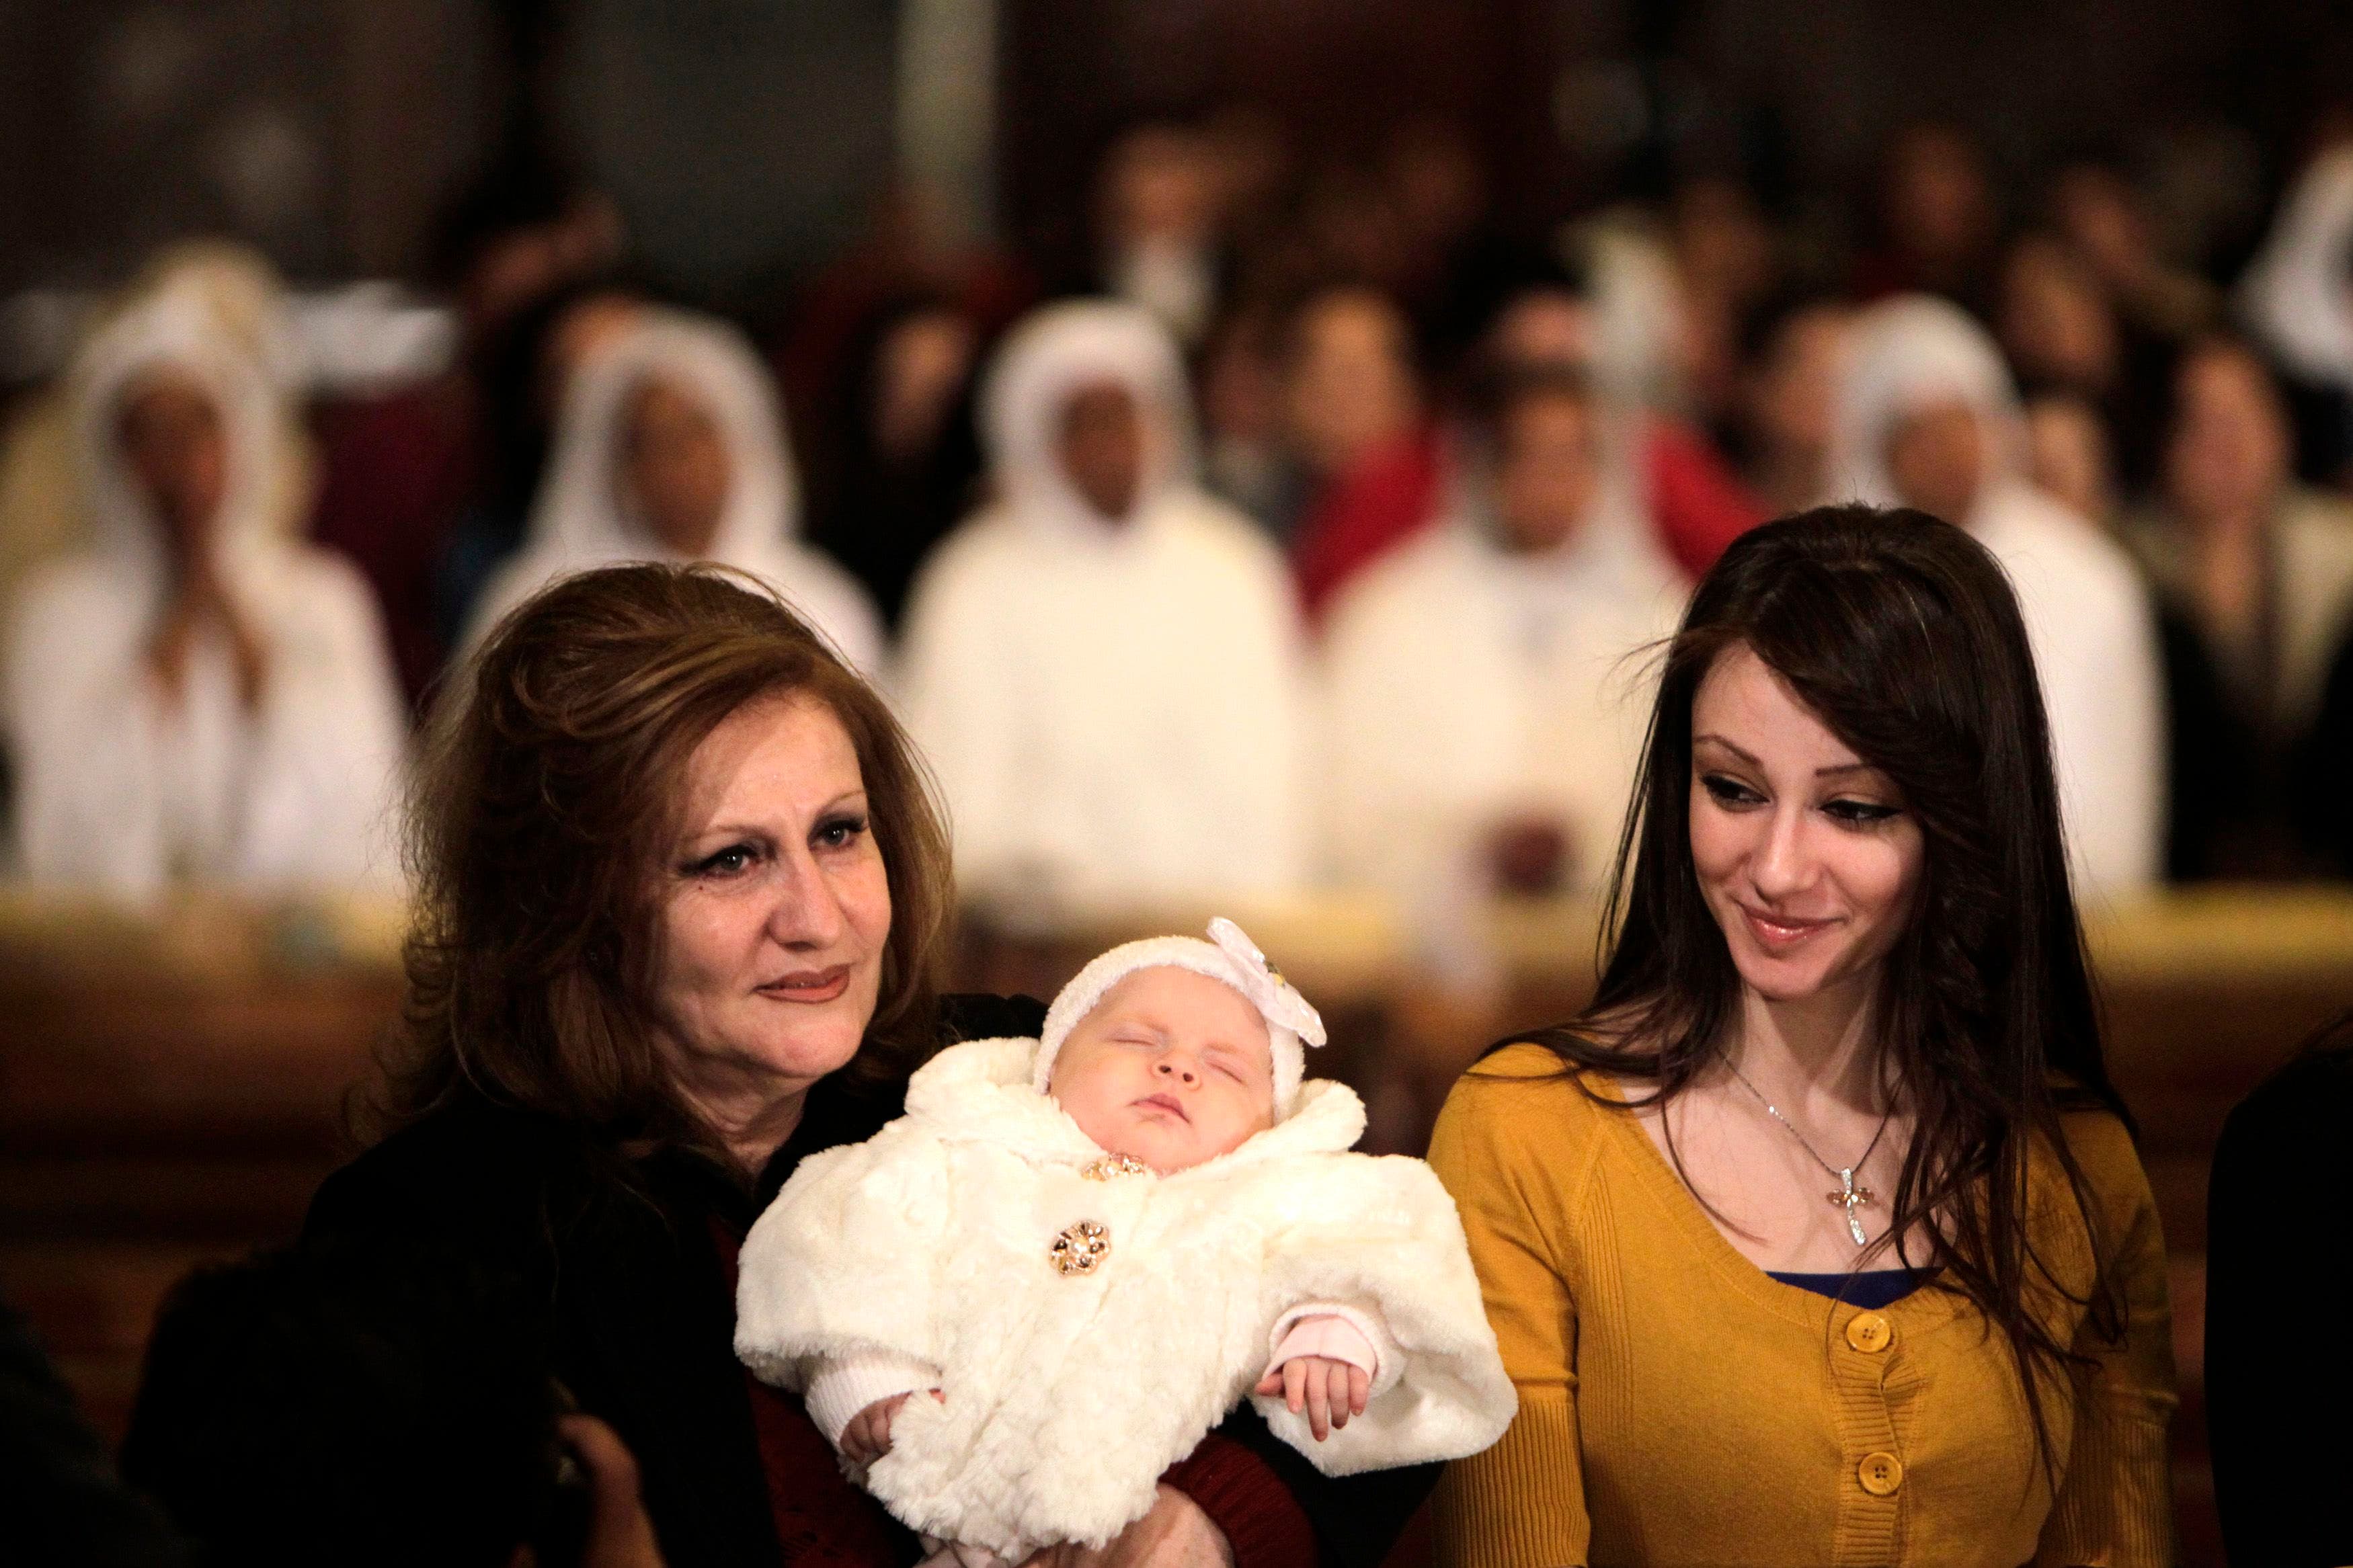 Egyptians celebrate Coptic Christmas